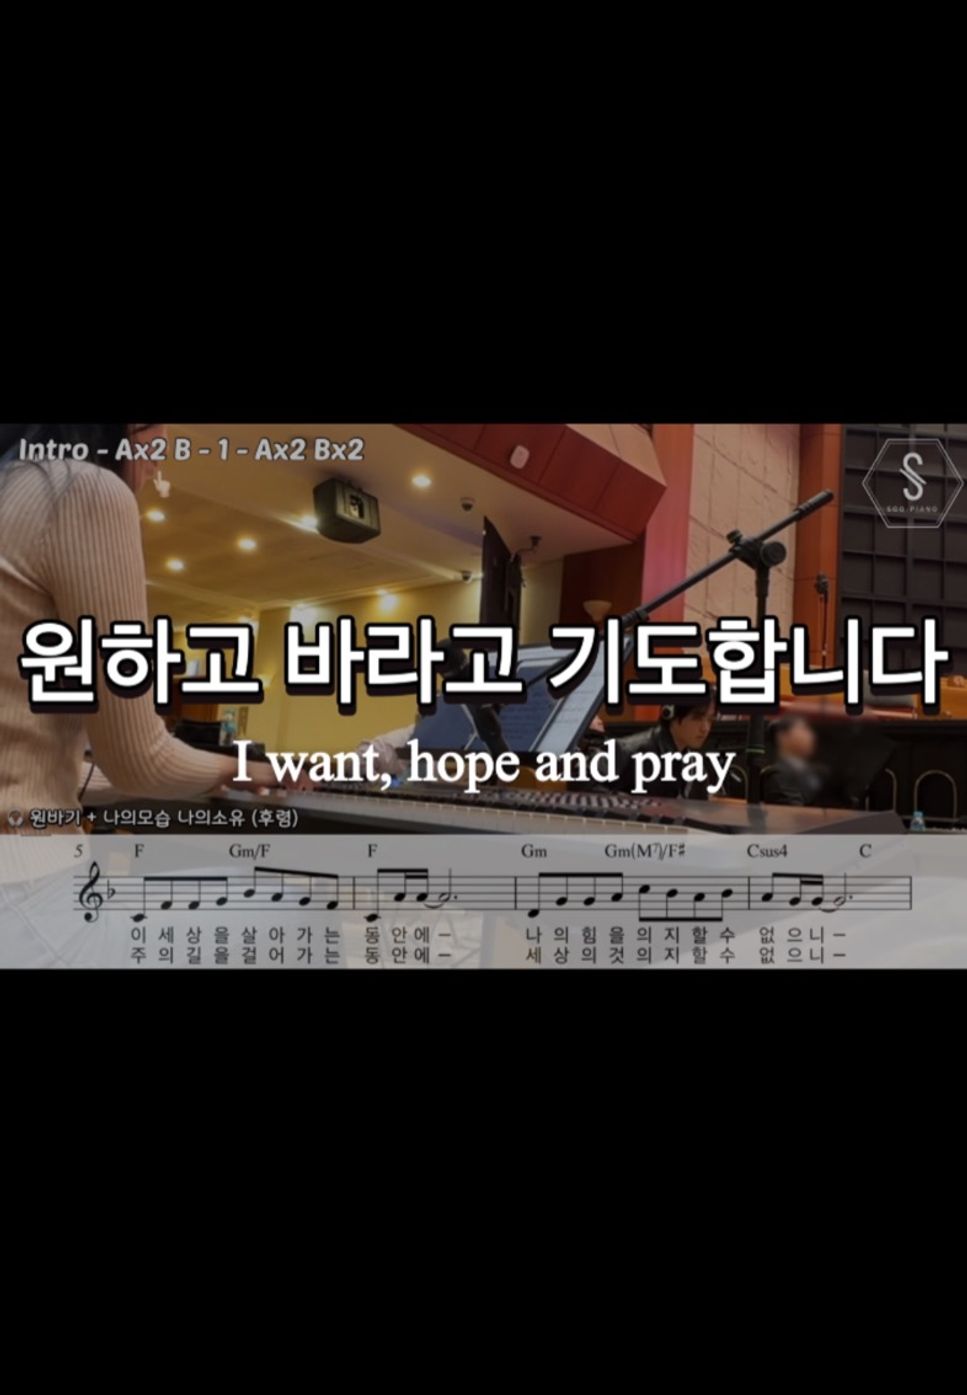 민호기 - I want, hope and pray (lead sheet) by SOOPIANO